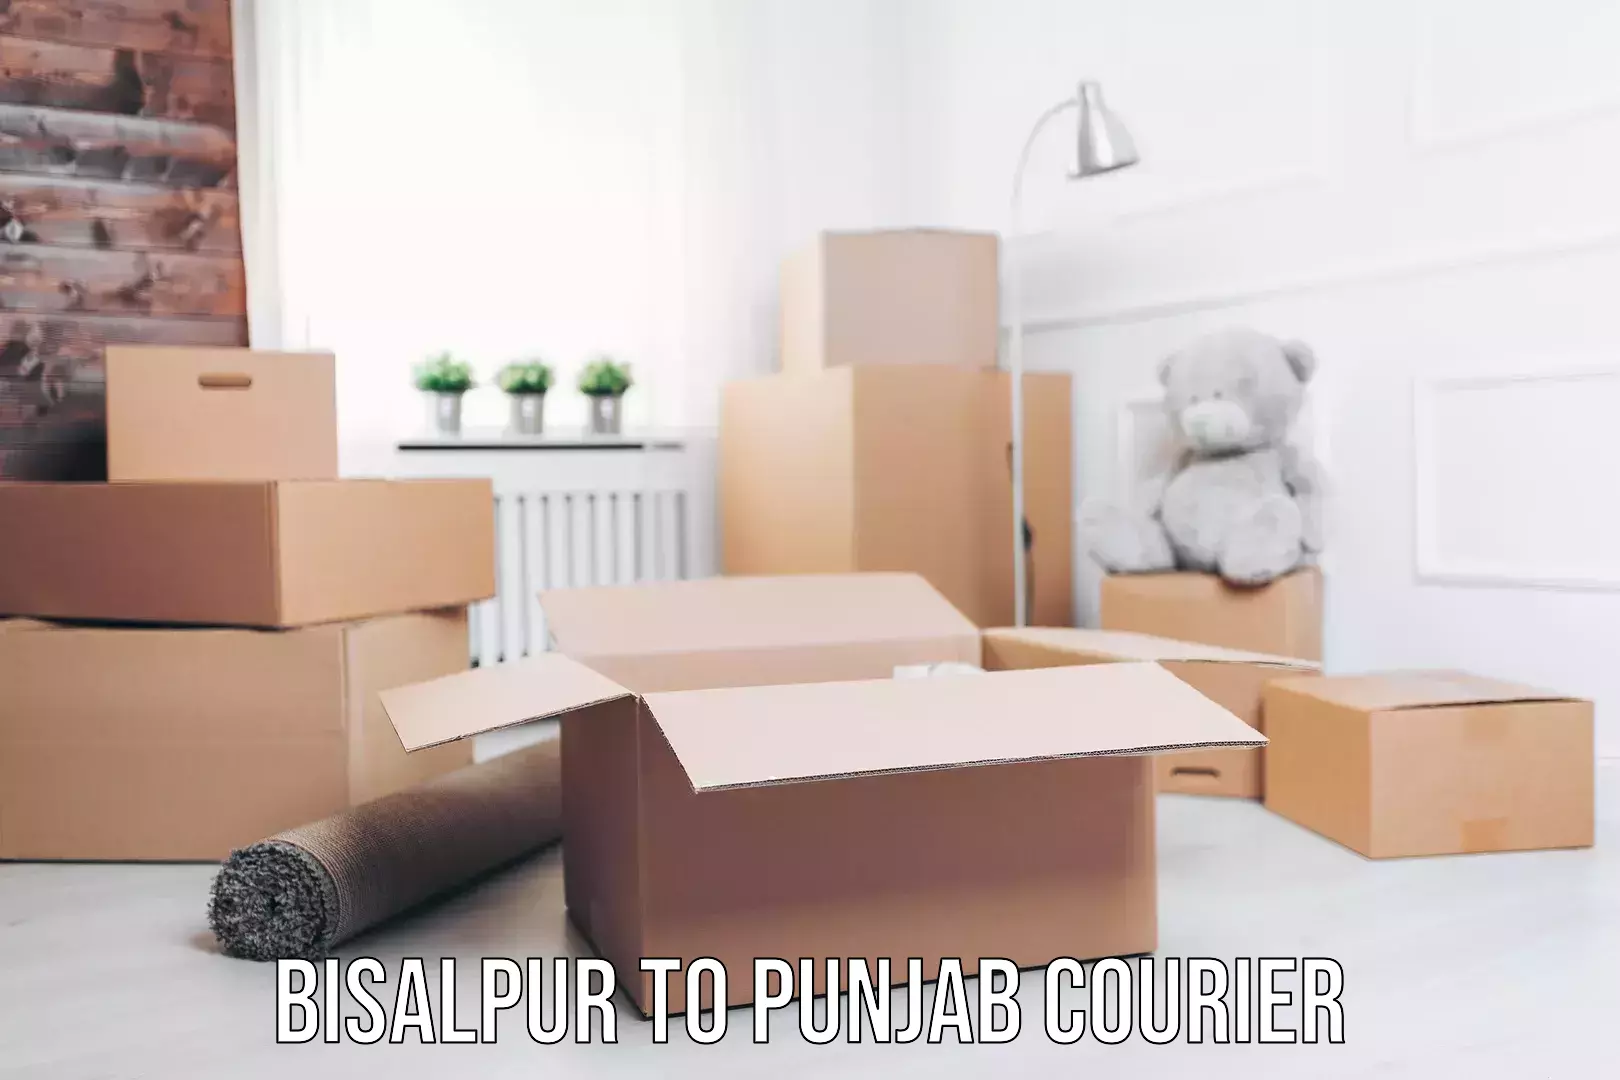 Efficient parcel delivery Bisalpur to Punjab